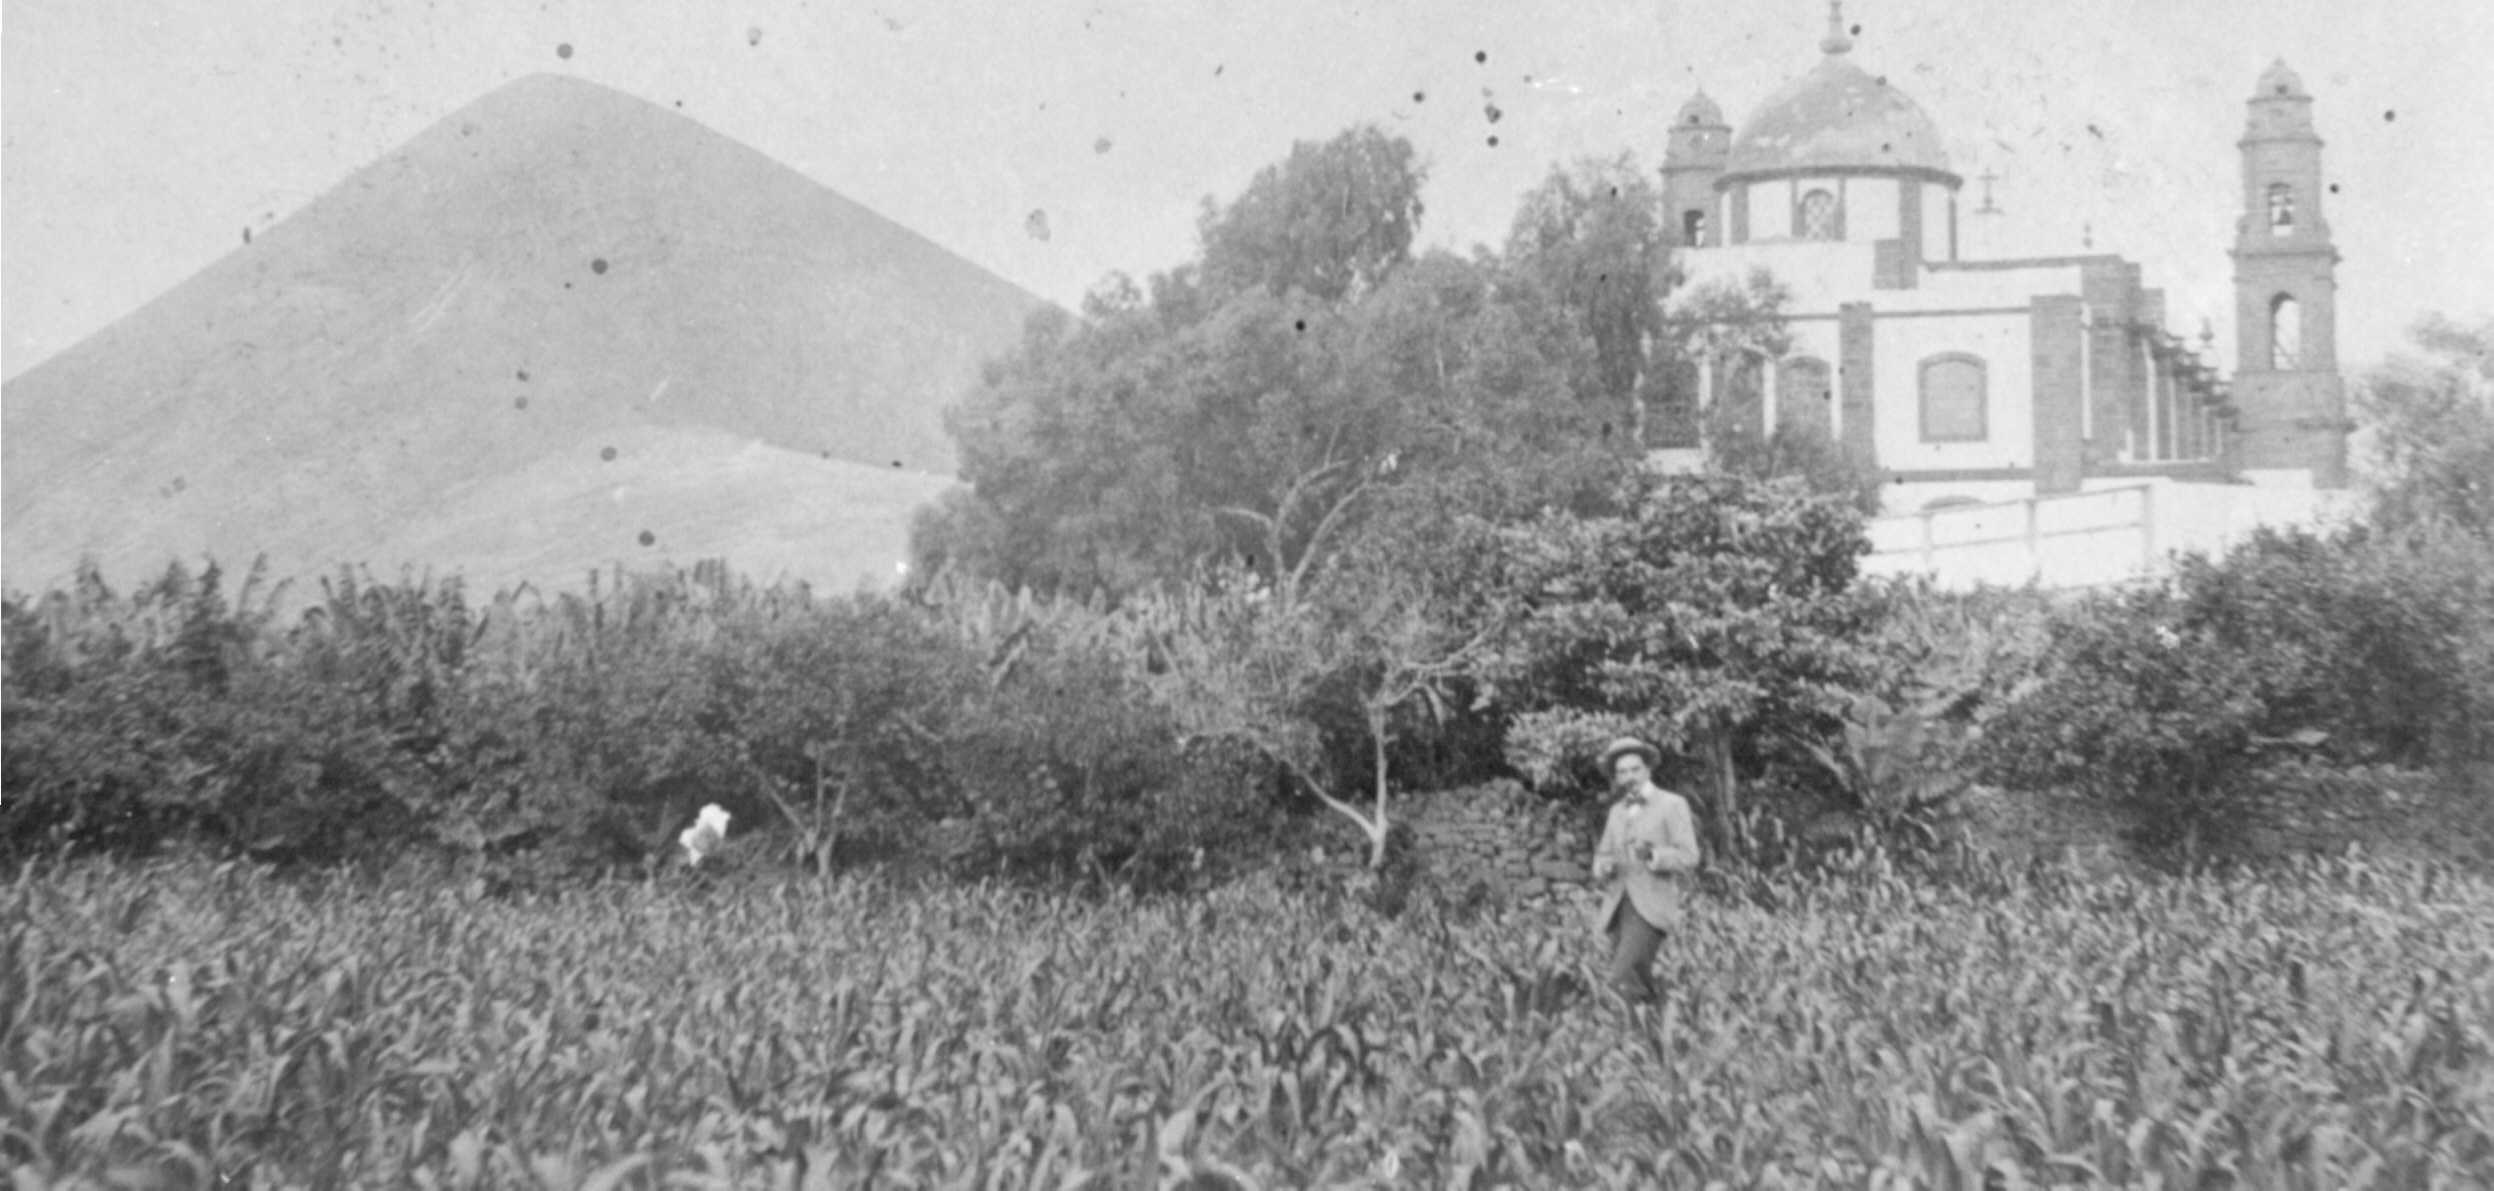 Trasera de la Iglesia vista desde una cercana huerta de frutales y millo.